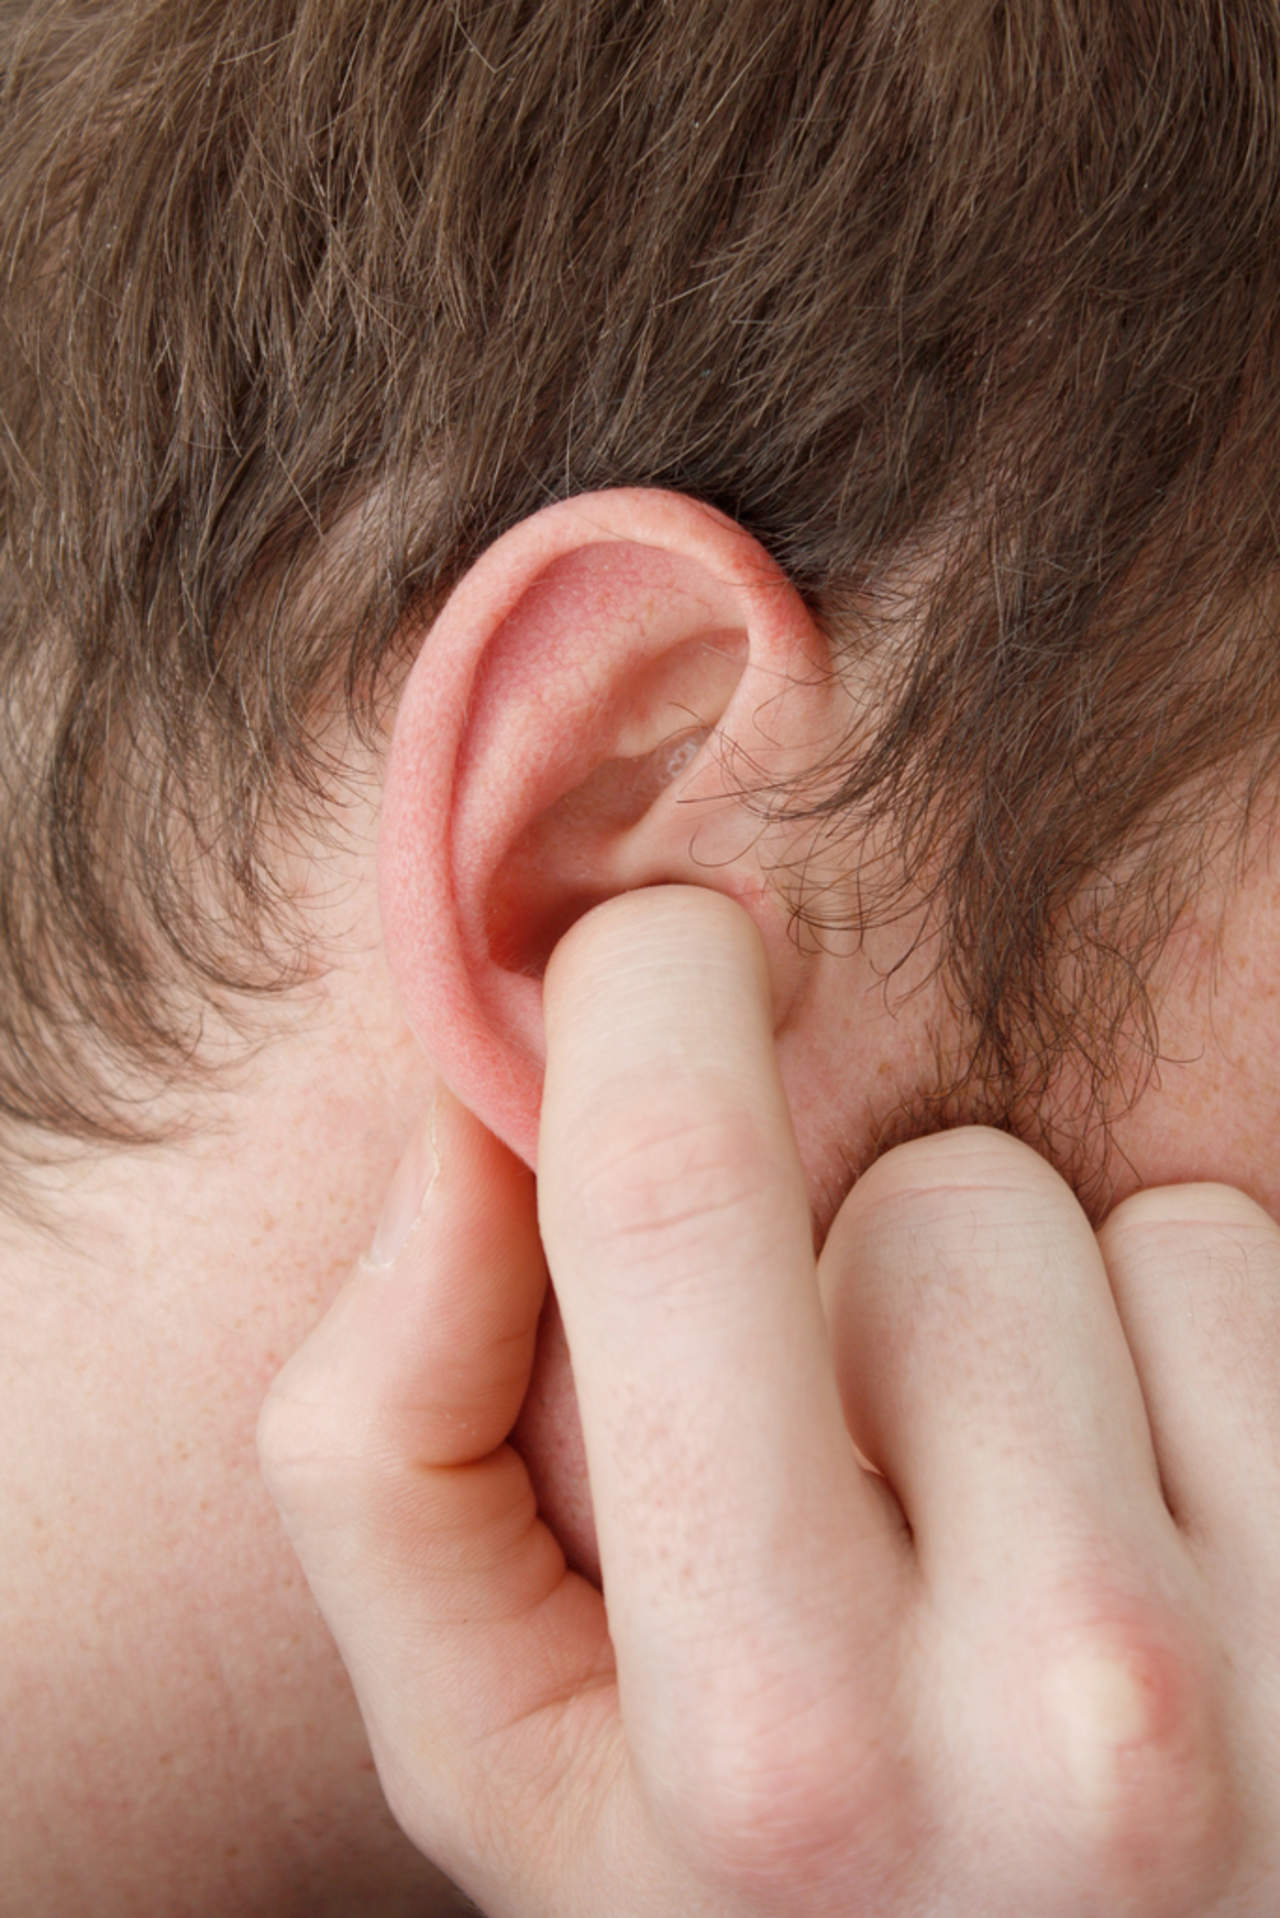 ¿Qué provoca el efecto del oído tapado?